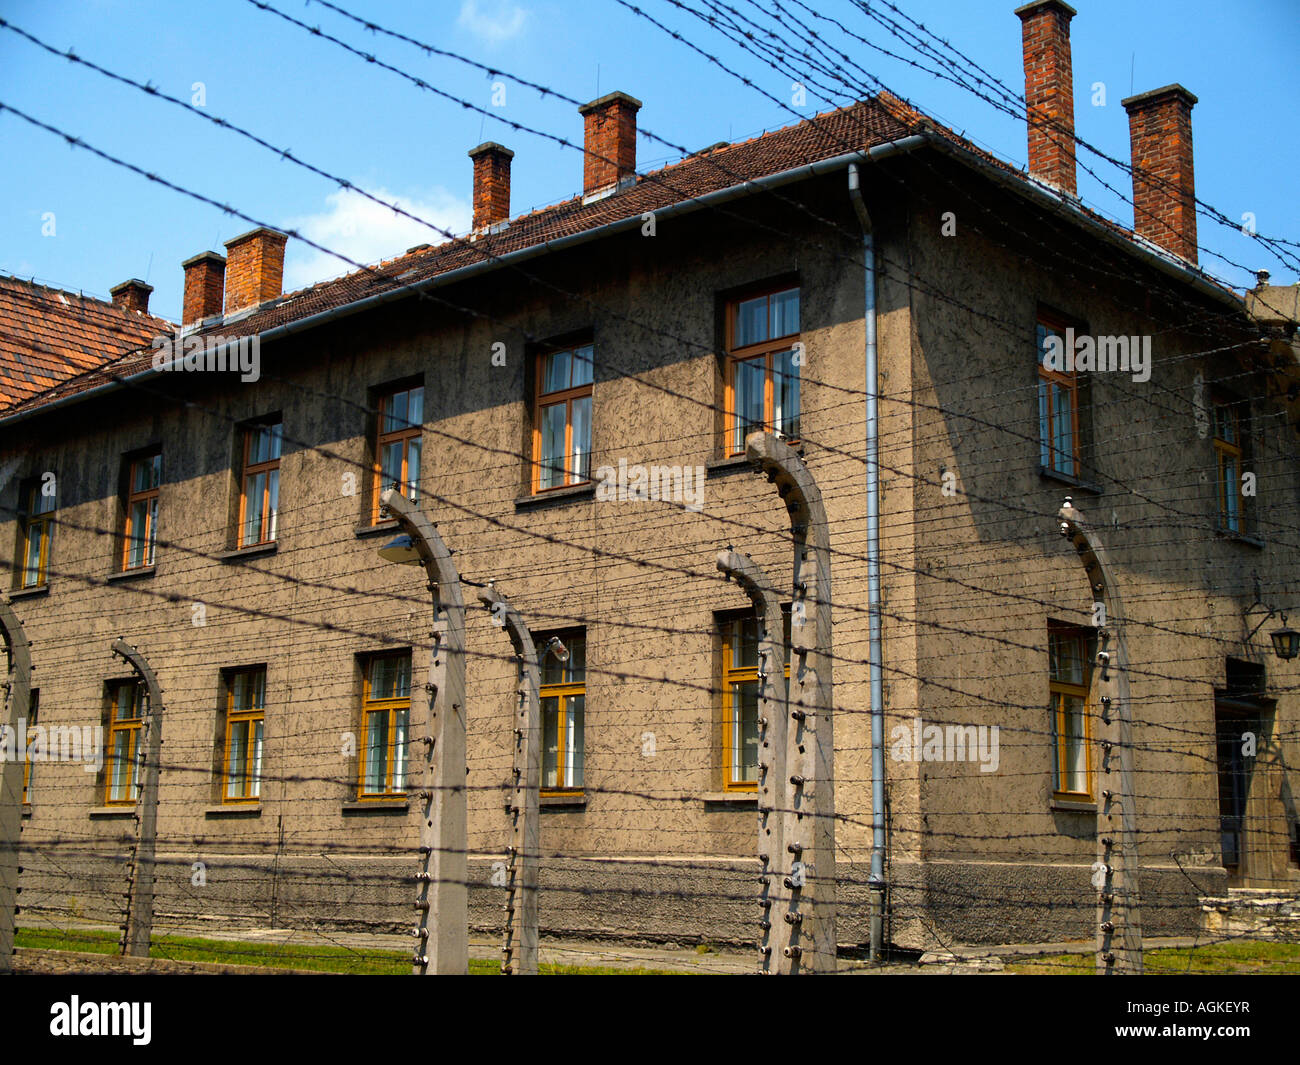 Les fils barbelés, casernes, et des bâtiments administratifs et de ruines à l'extérieur du camp de concentration d'Auschwitz Cracovie, Pologne. Banque D'Images